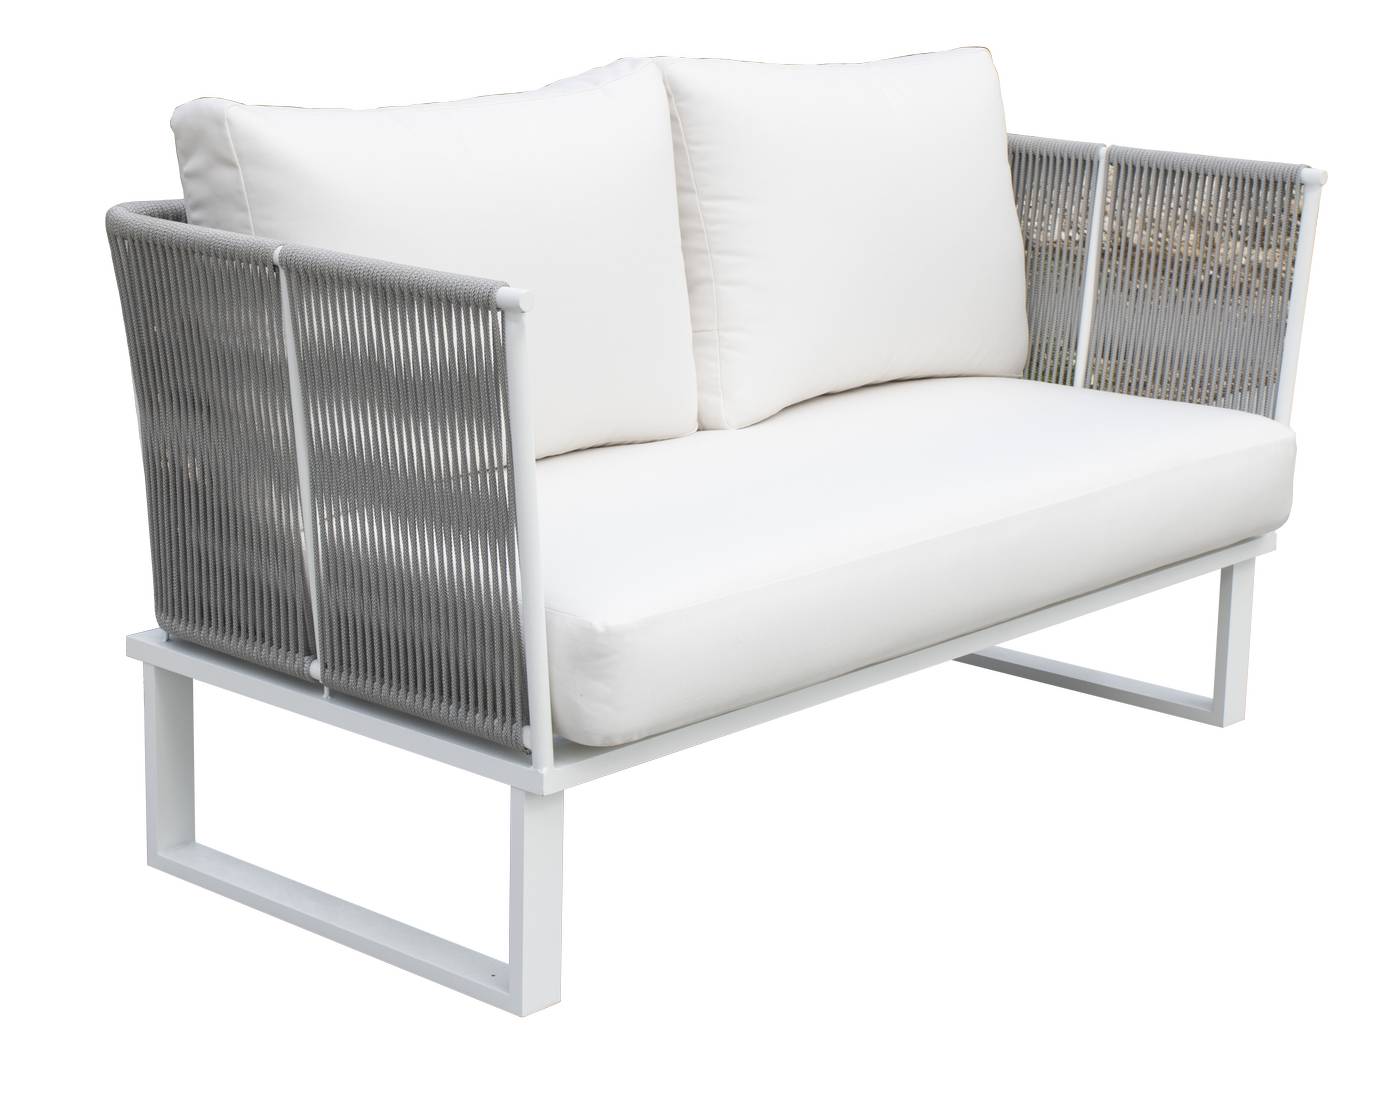 Sofá relax 2 plazas con cojines desenfundables. Estructura de aluminio recubierta de cuerda redonda. Disponible varios colores.